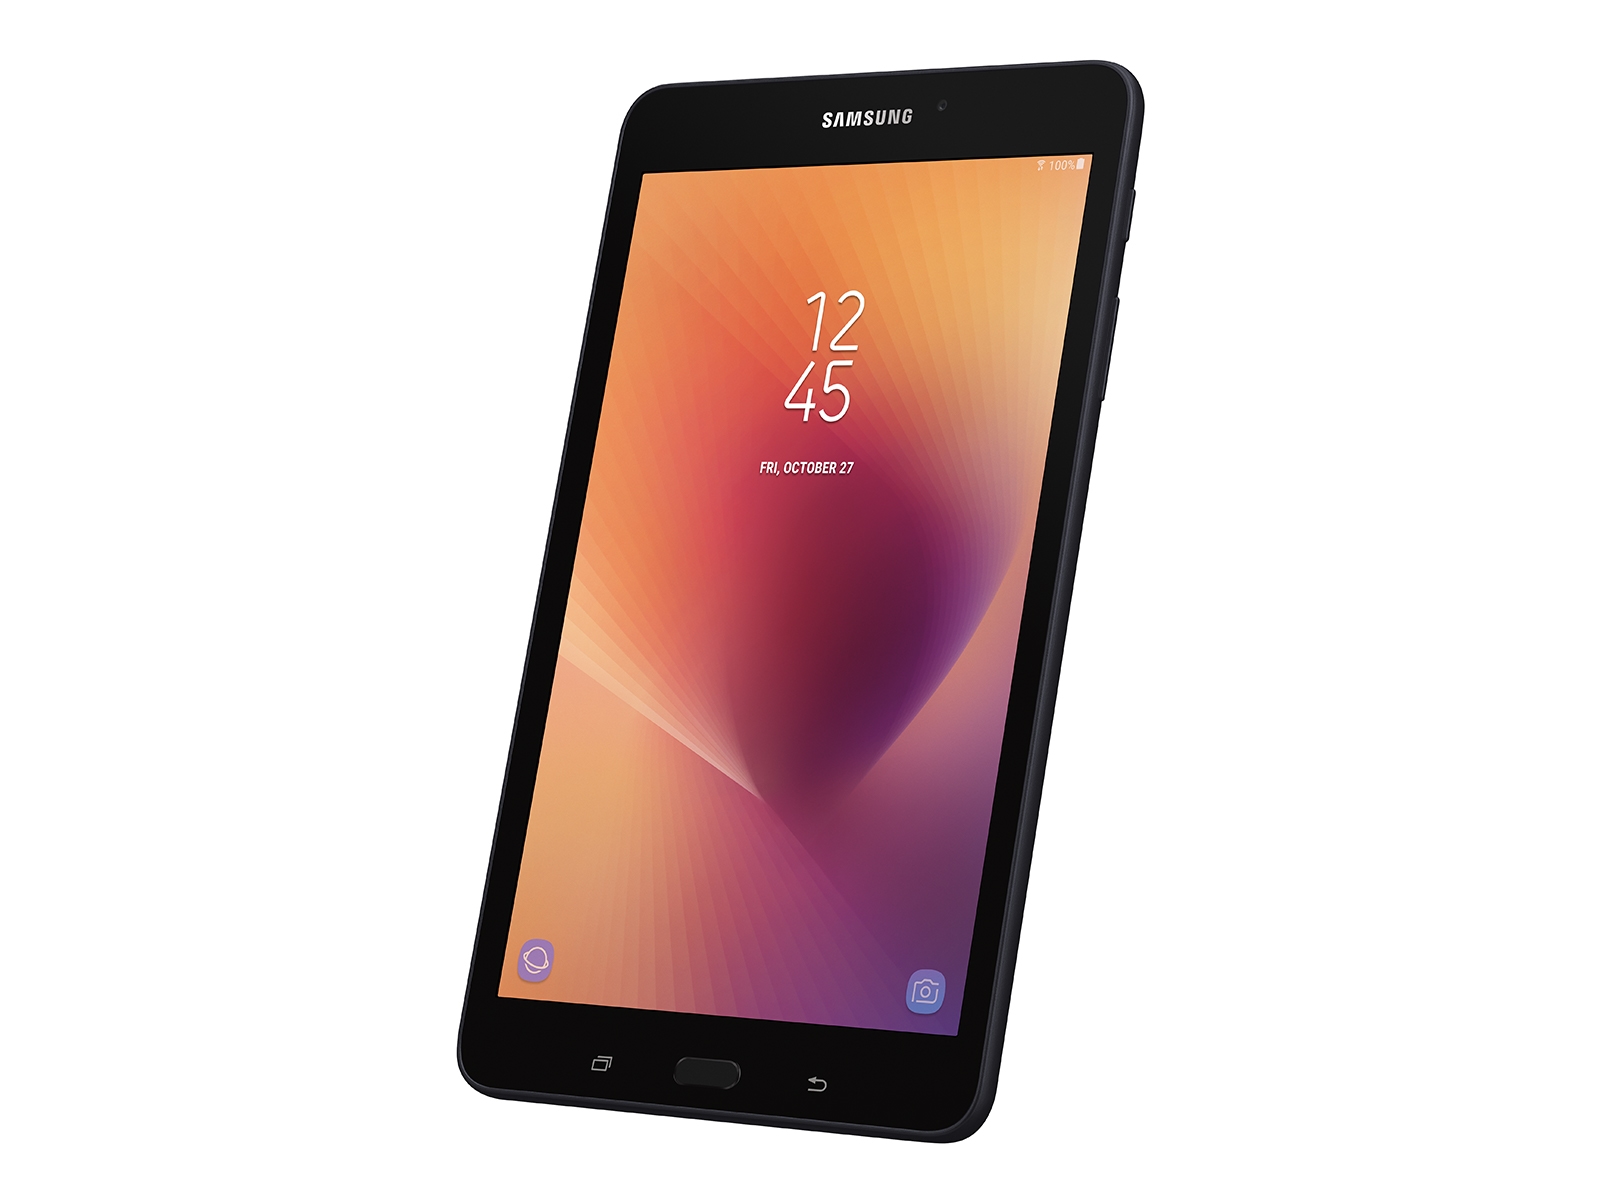 Samsung Galaxy Tab A T295 8inch 2GB 32GB - Slightly Used price in